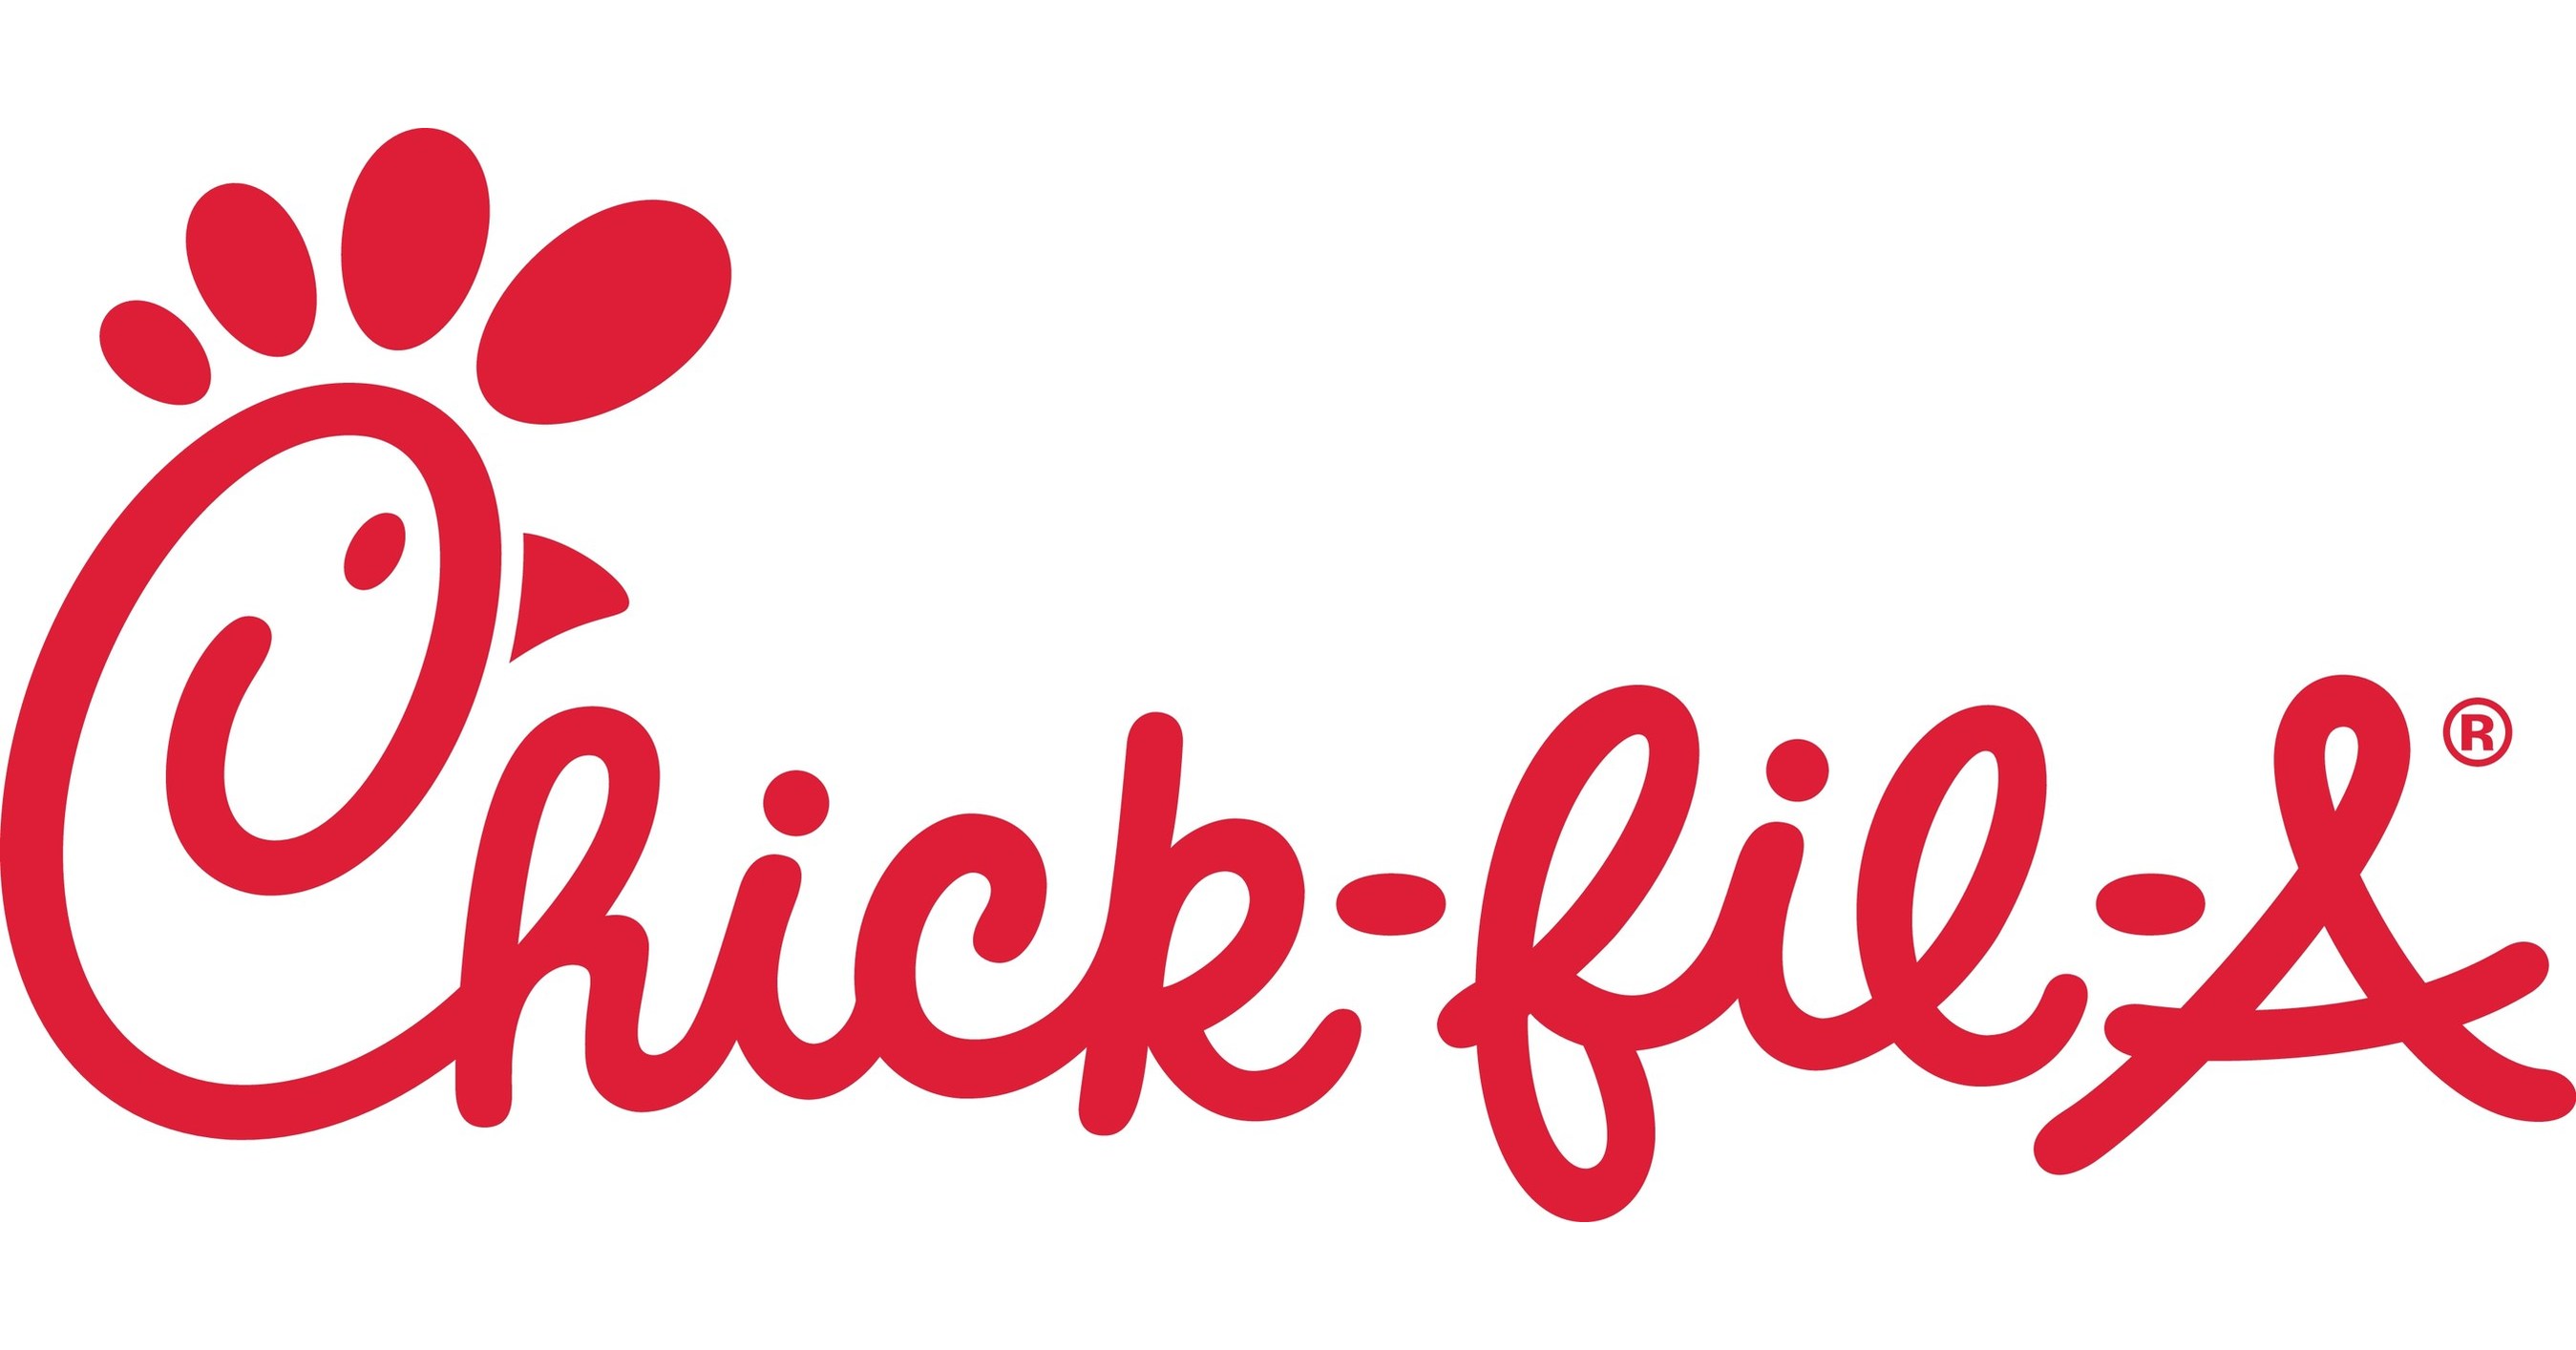 https://mma.prnewswire.com/media/959018/Chick_fil_A_Logo.jpg?p=facebook